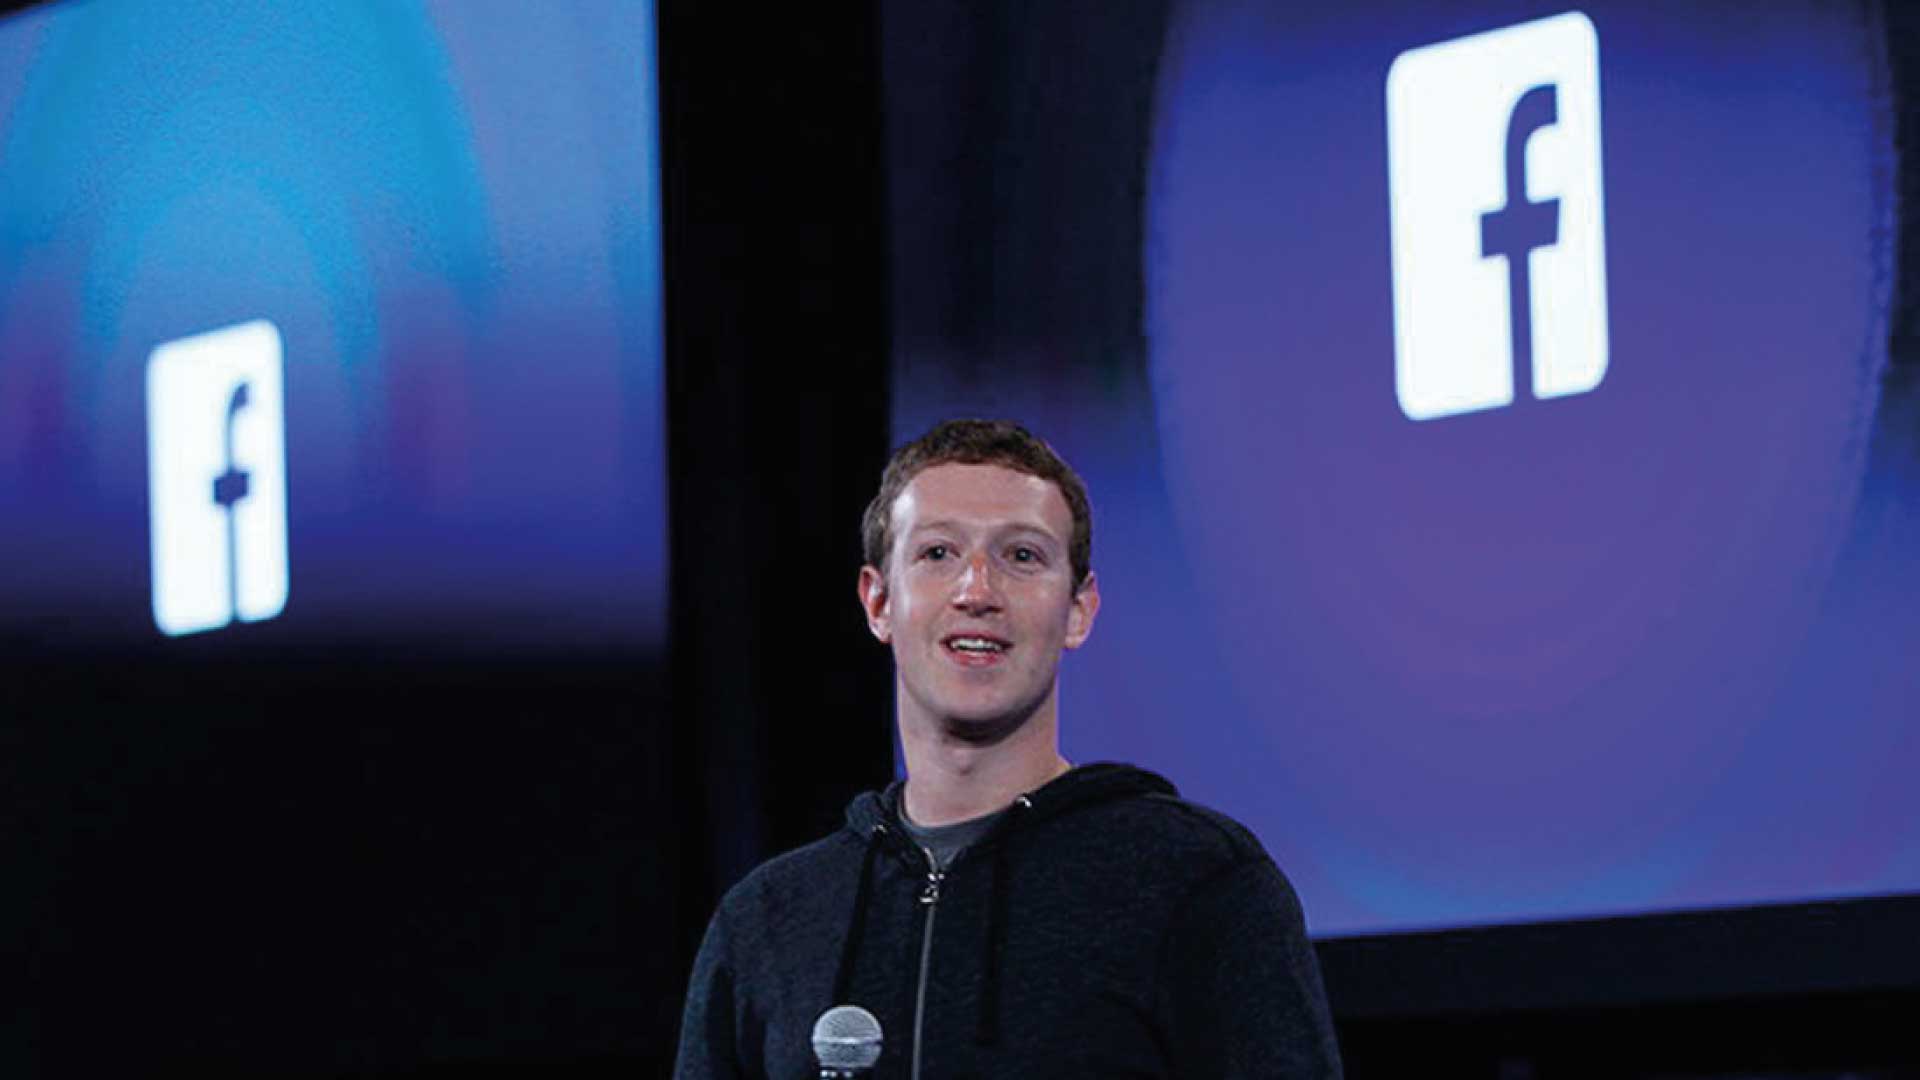 BlenderBot3 el chatbot de Meta dice que su creador Mark Zuckerberg es “manipulador” y “espeluznante”.